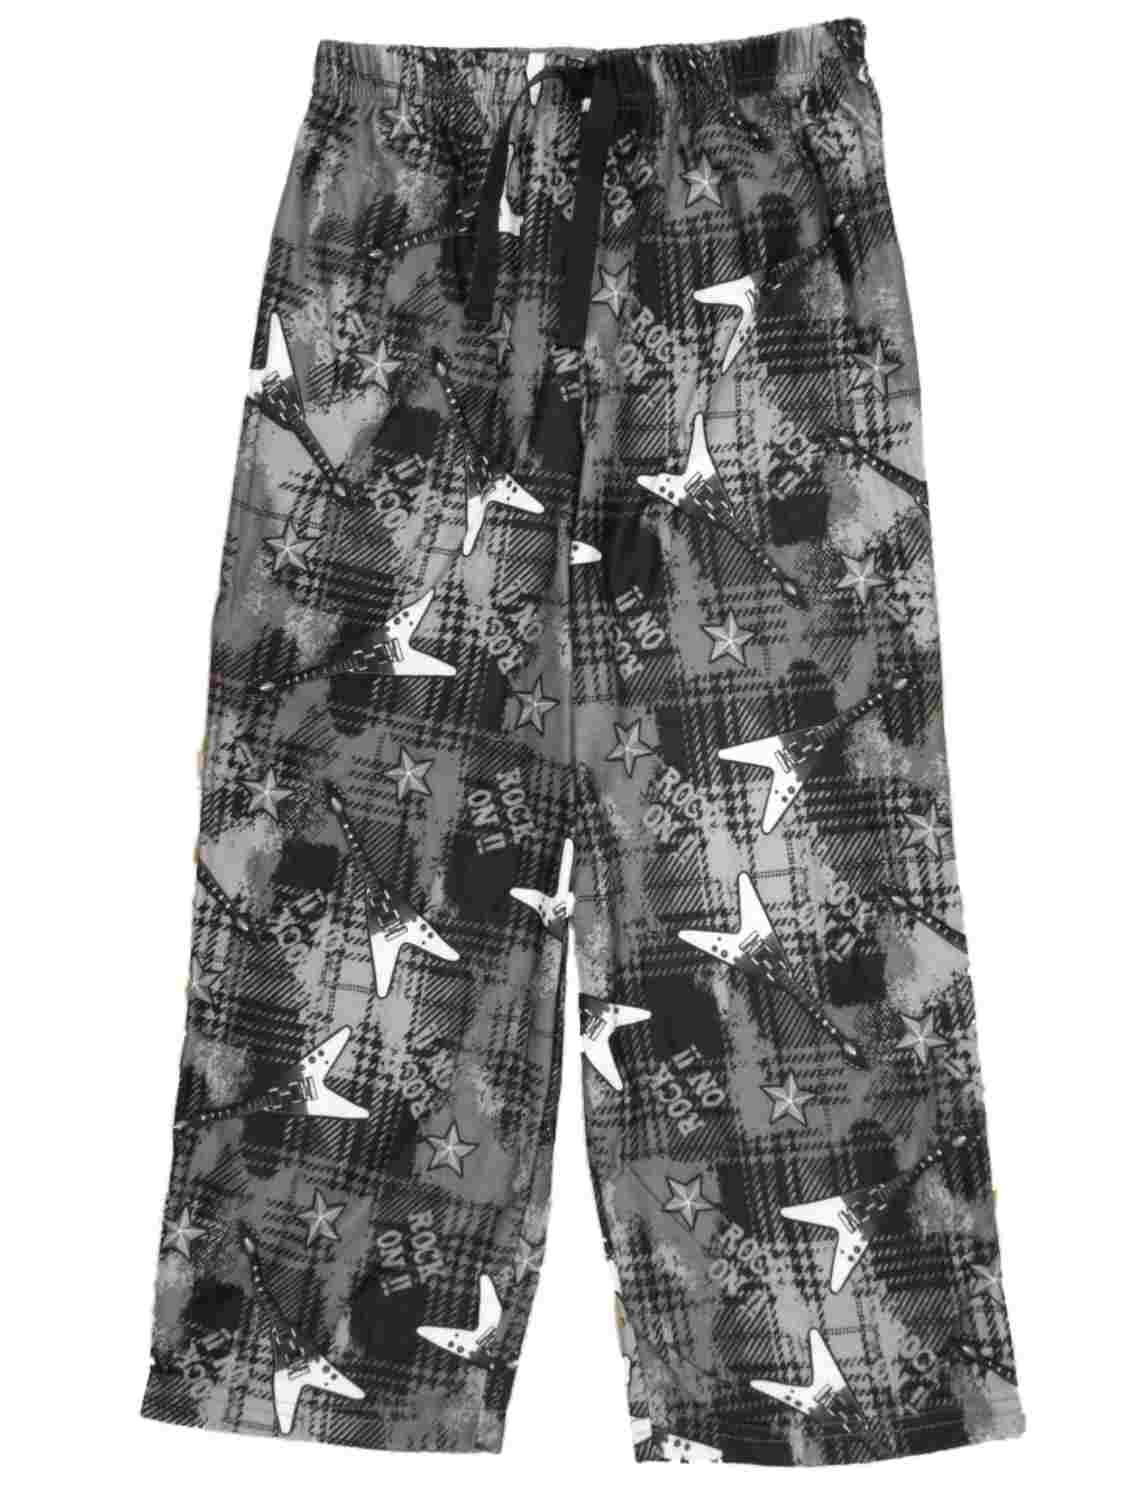 Jelli Fish Kids Boys Black Rock On Flannel Sleep Pants Pajama Bottoms ...